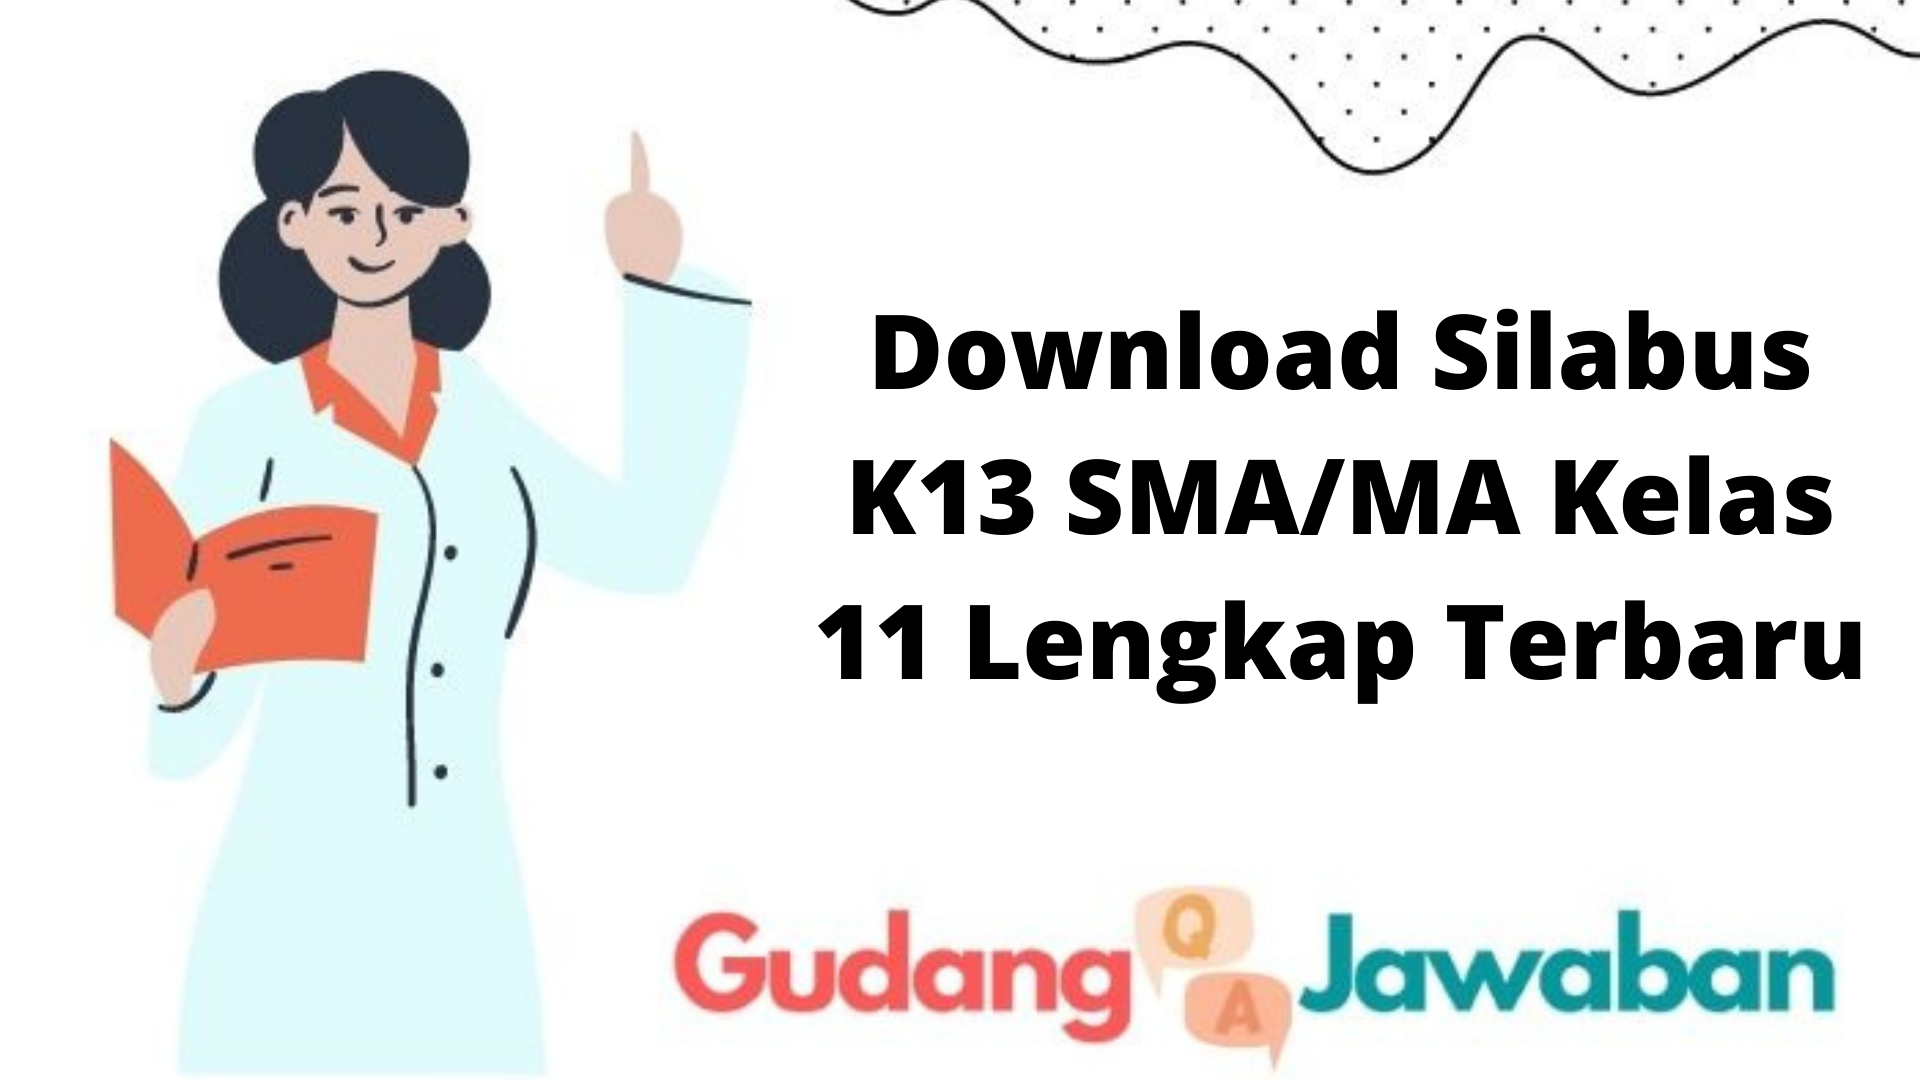 Download Silabus K13 SMA/MA Kelas 11 Lengkap Terbaru